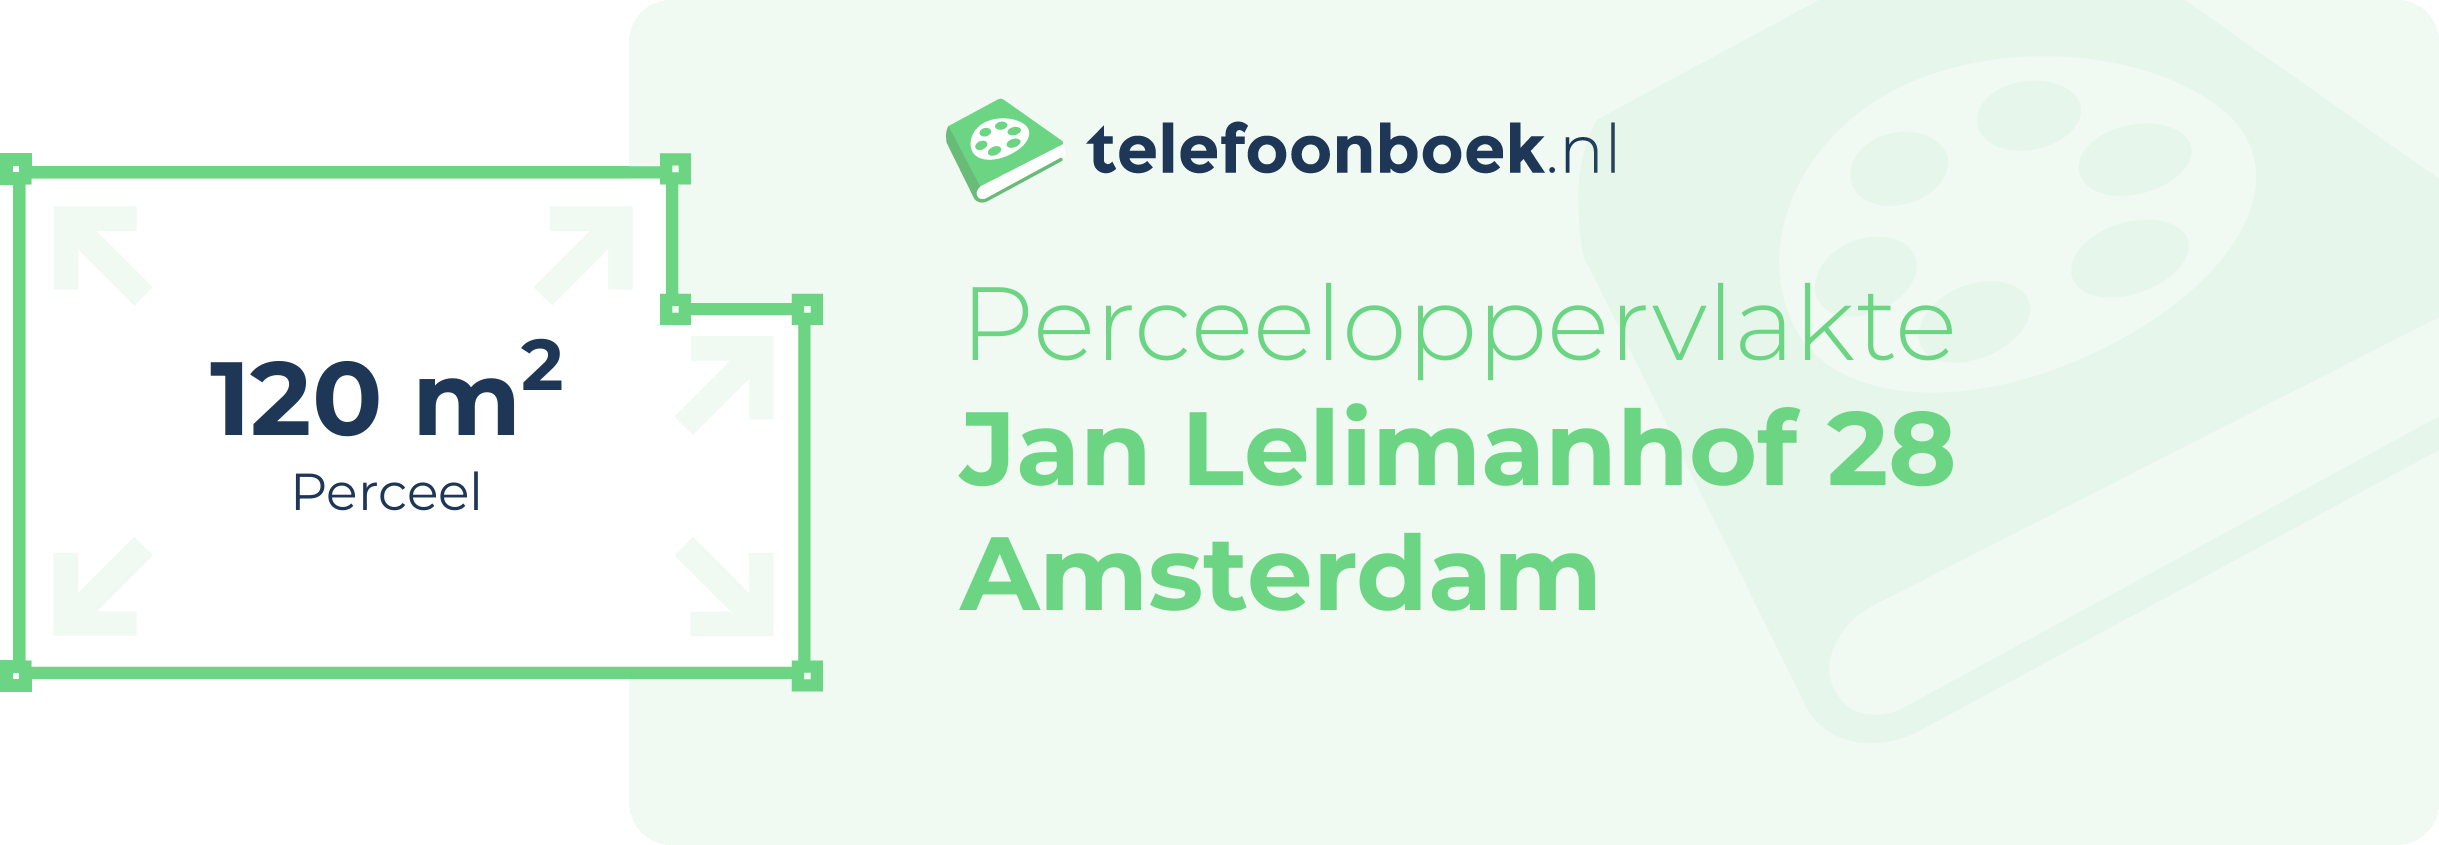 Perceeloppervlakte Jan Lelimanhof 28 Amsterdam